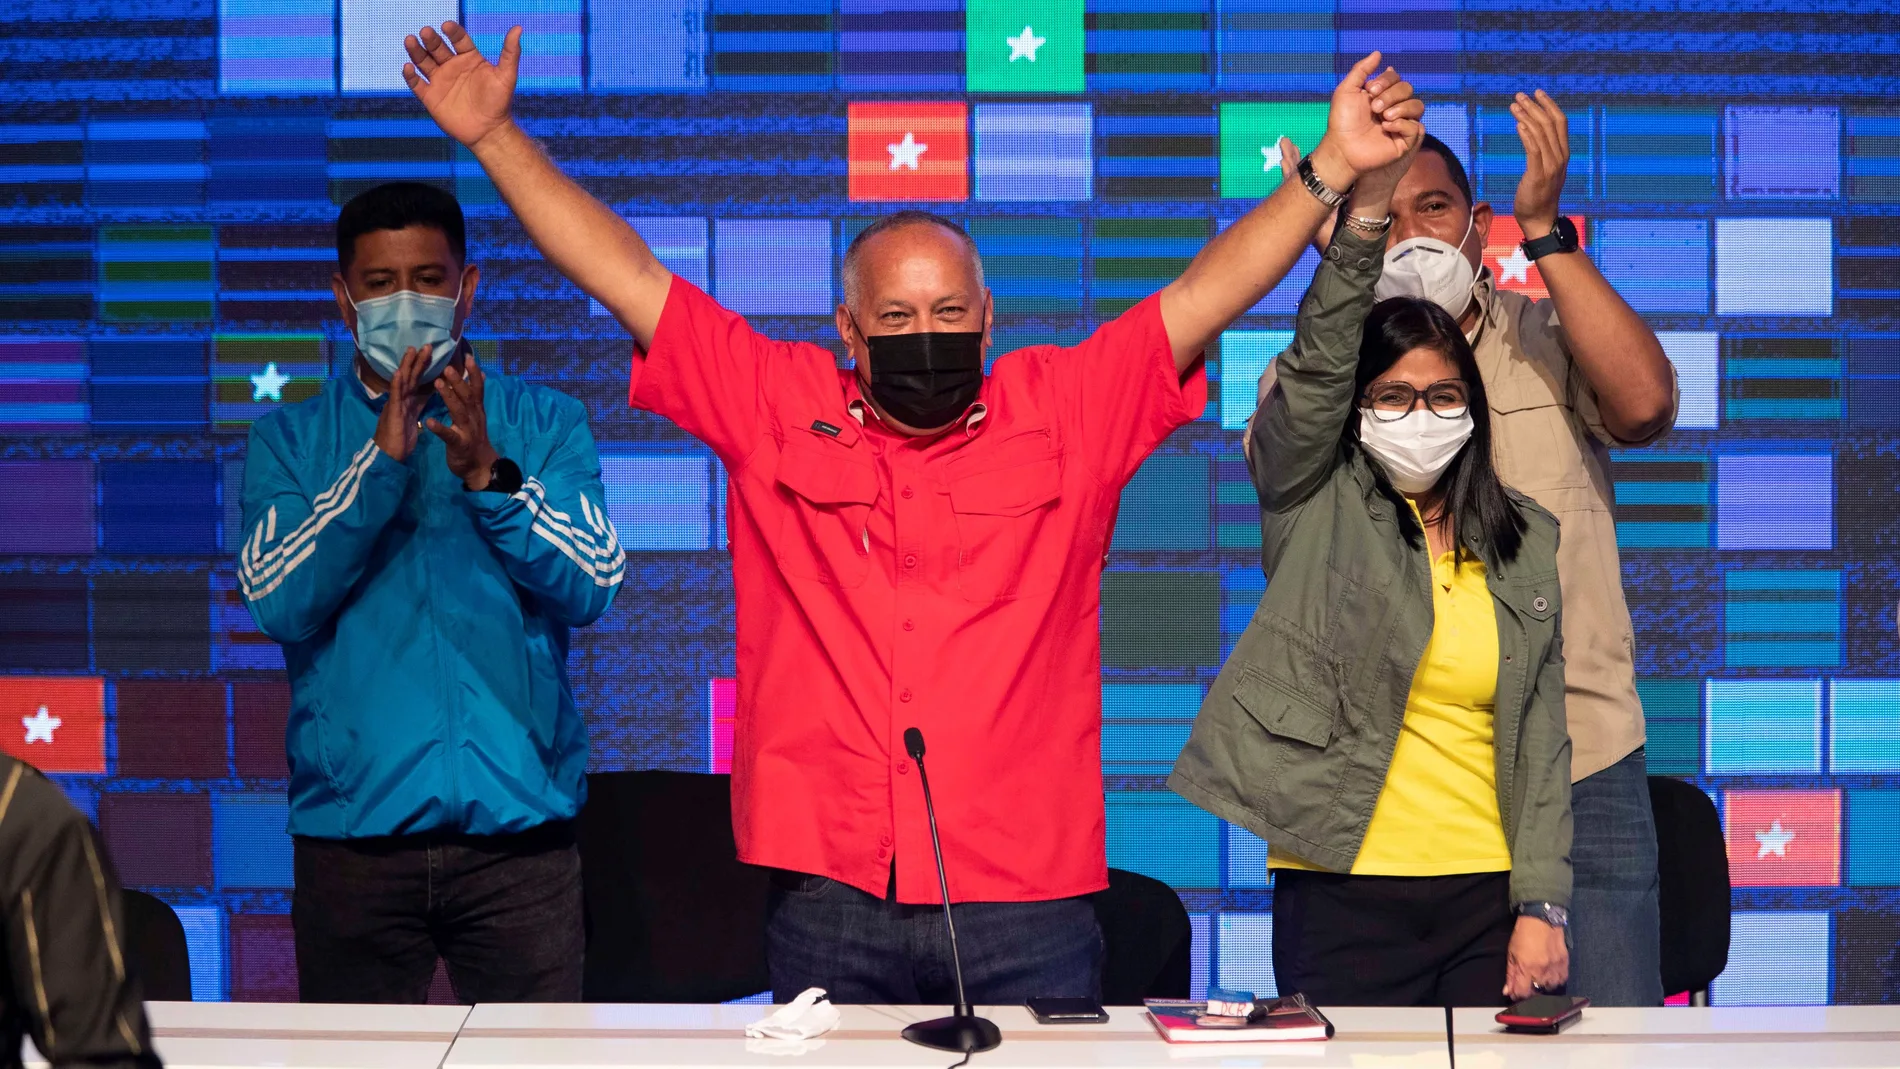 Figuras del chavismo como Diosdado Cabello o Delcy Rodríguez (en la imagen) han conseguido un escaño tras la farsa electoral del domingo